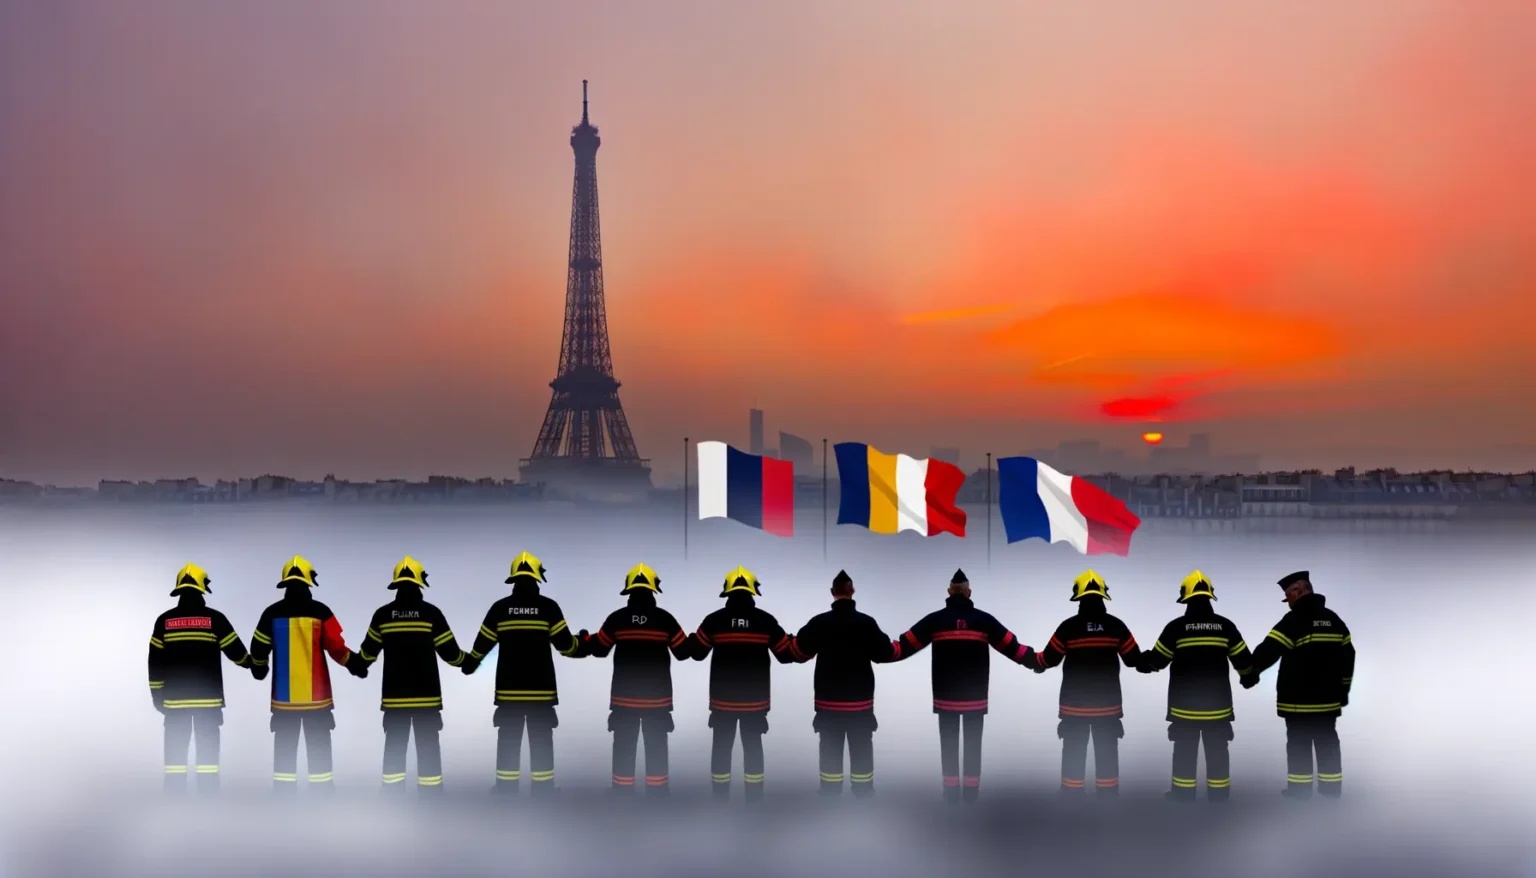 Eine Gruppe von Feuerwehrleuten, die in einer Reihe stehen und sich an den Händen halten, vor dem Hintergrund des Eiffelturms in Paris während der Dämmerung mit einem dramatischen orangefarbenen Himmel und französischen Flaggen, die im Wind wehen, teilweise in Nebel gehüllt.